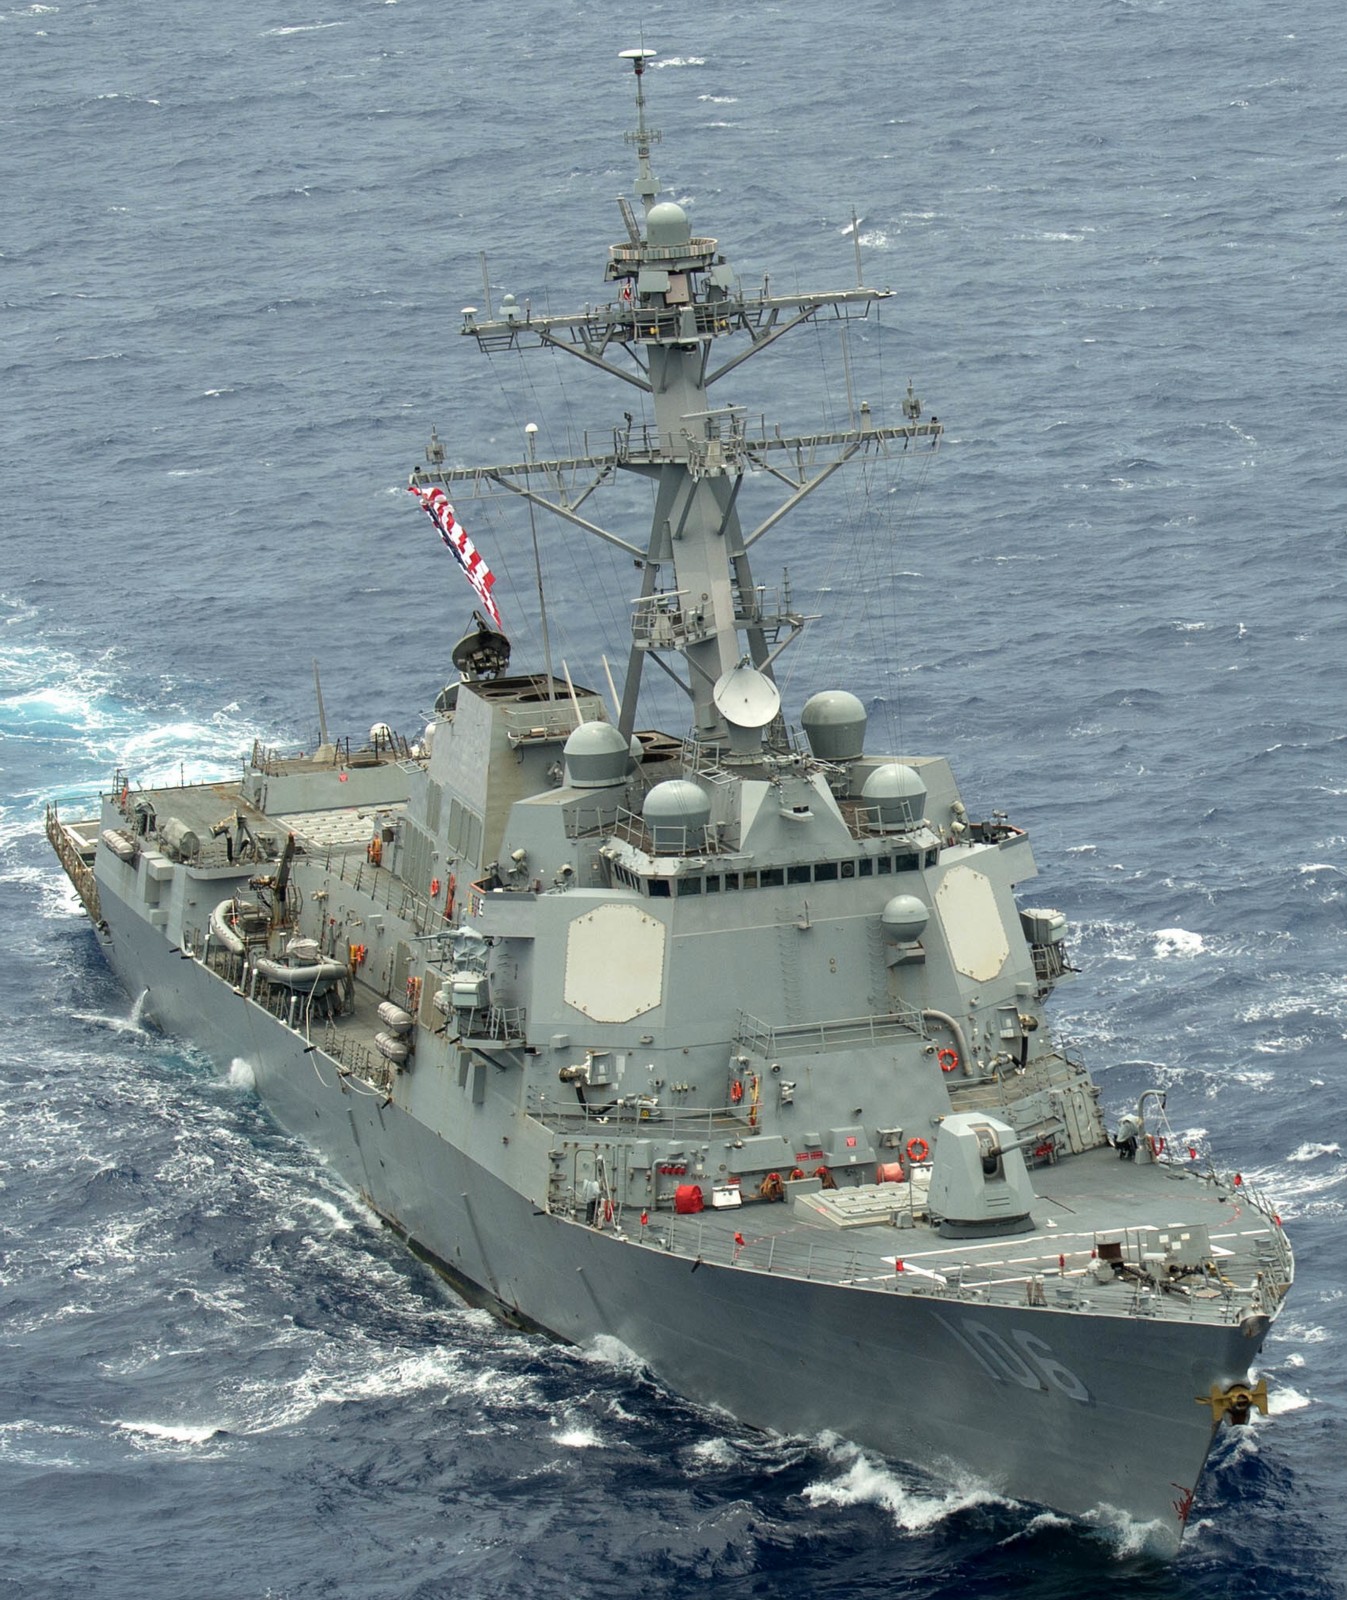 ddg-106 uss stockdale arleigh burke class guided missile destroyer aegis us navy rimpac pacific ocean 97